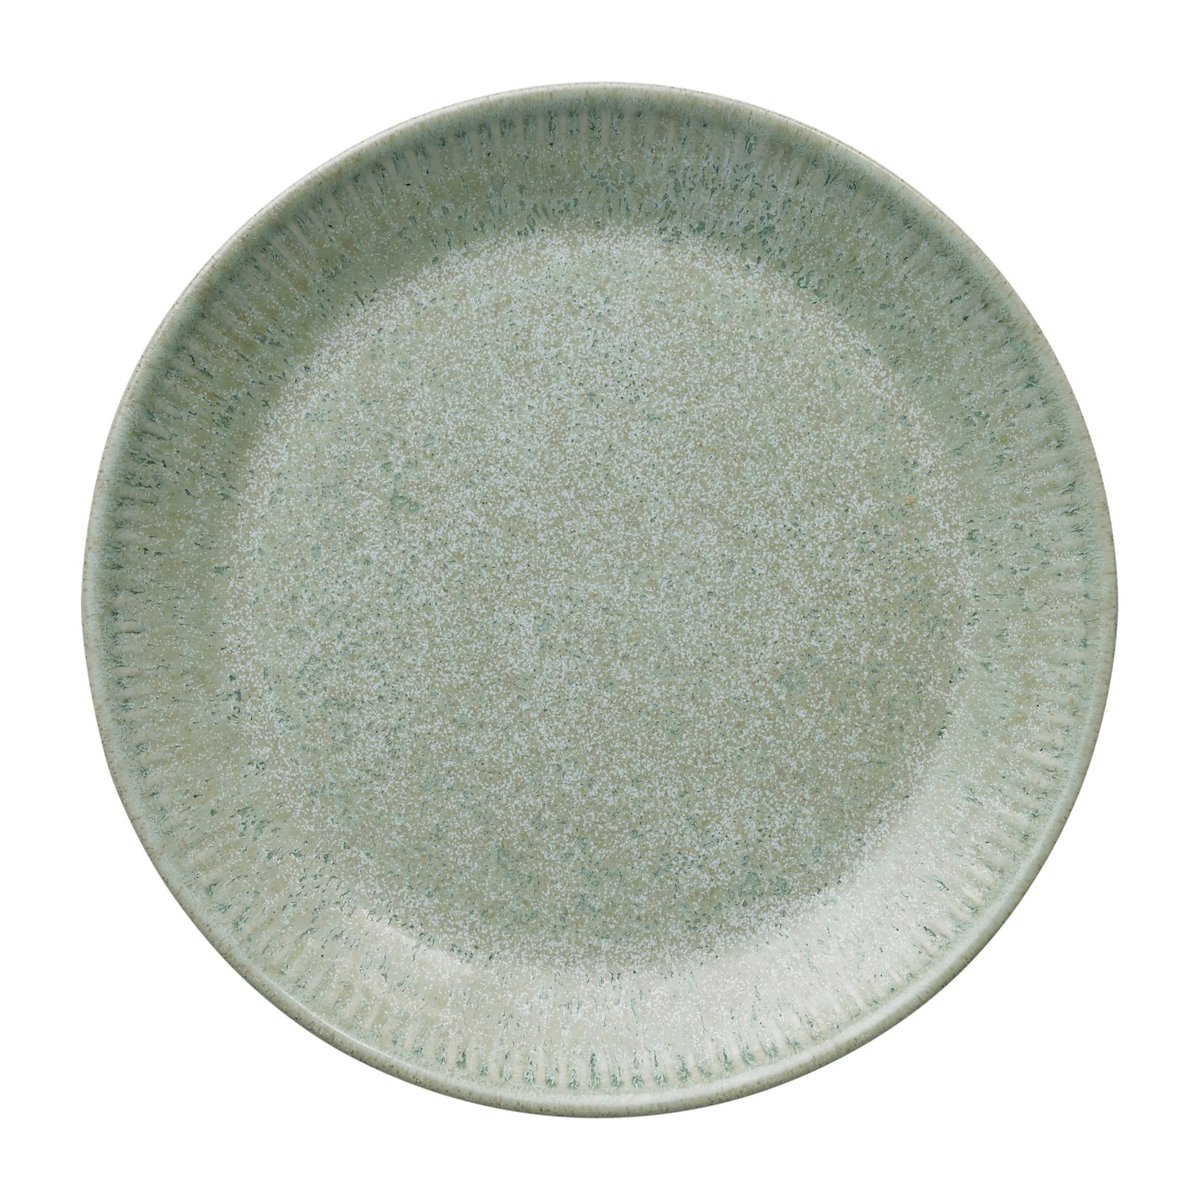 knabstrup keramik assiette plate vert olive knabstrup 19 cm